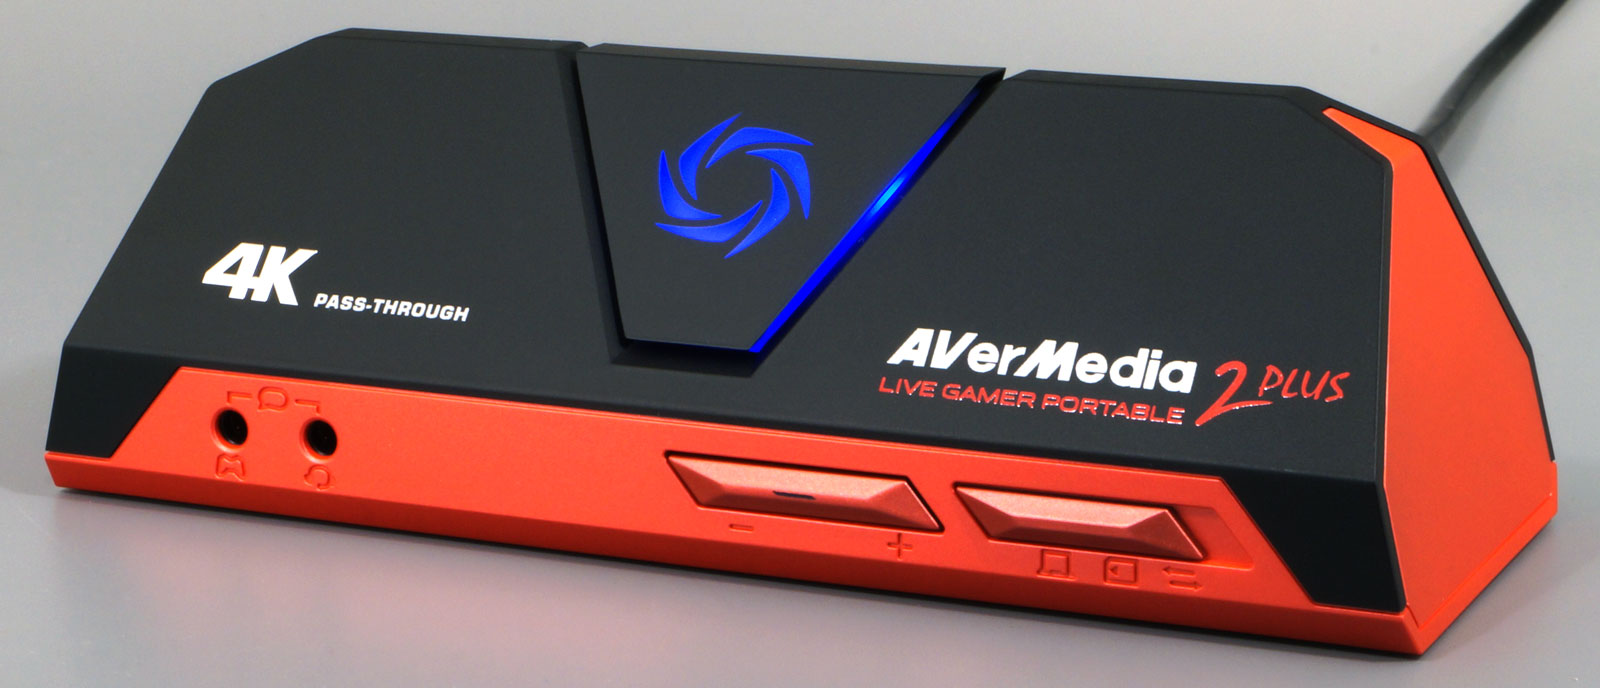 Обзор устройства захвата AverMedia Live Gamer Portable 2 Plus